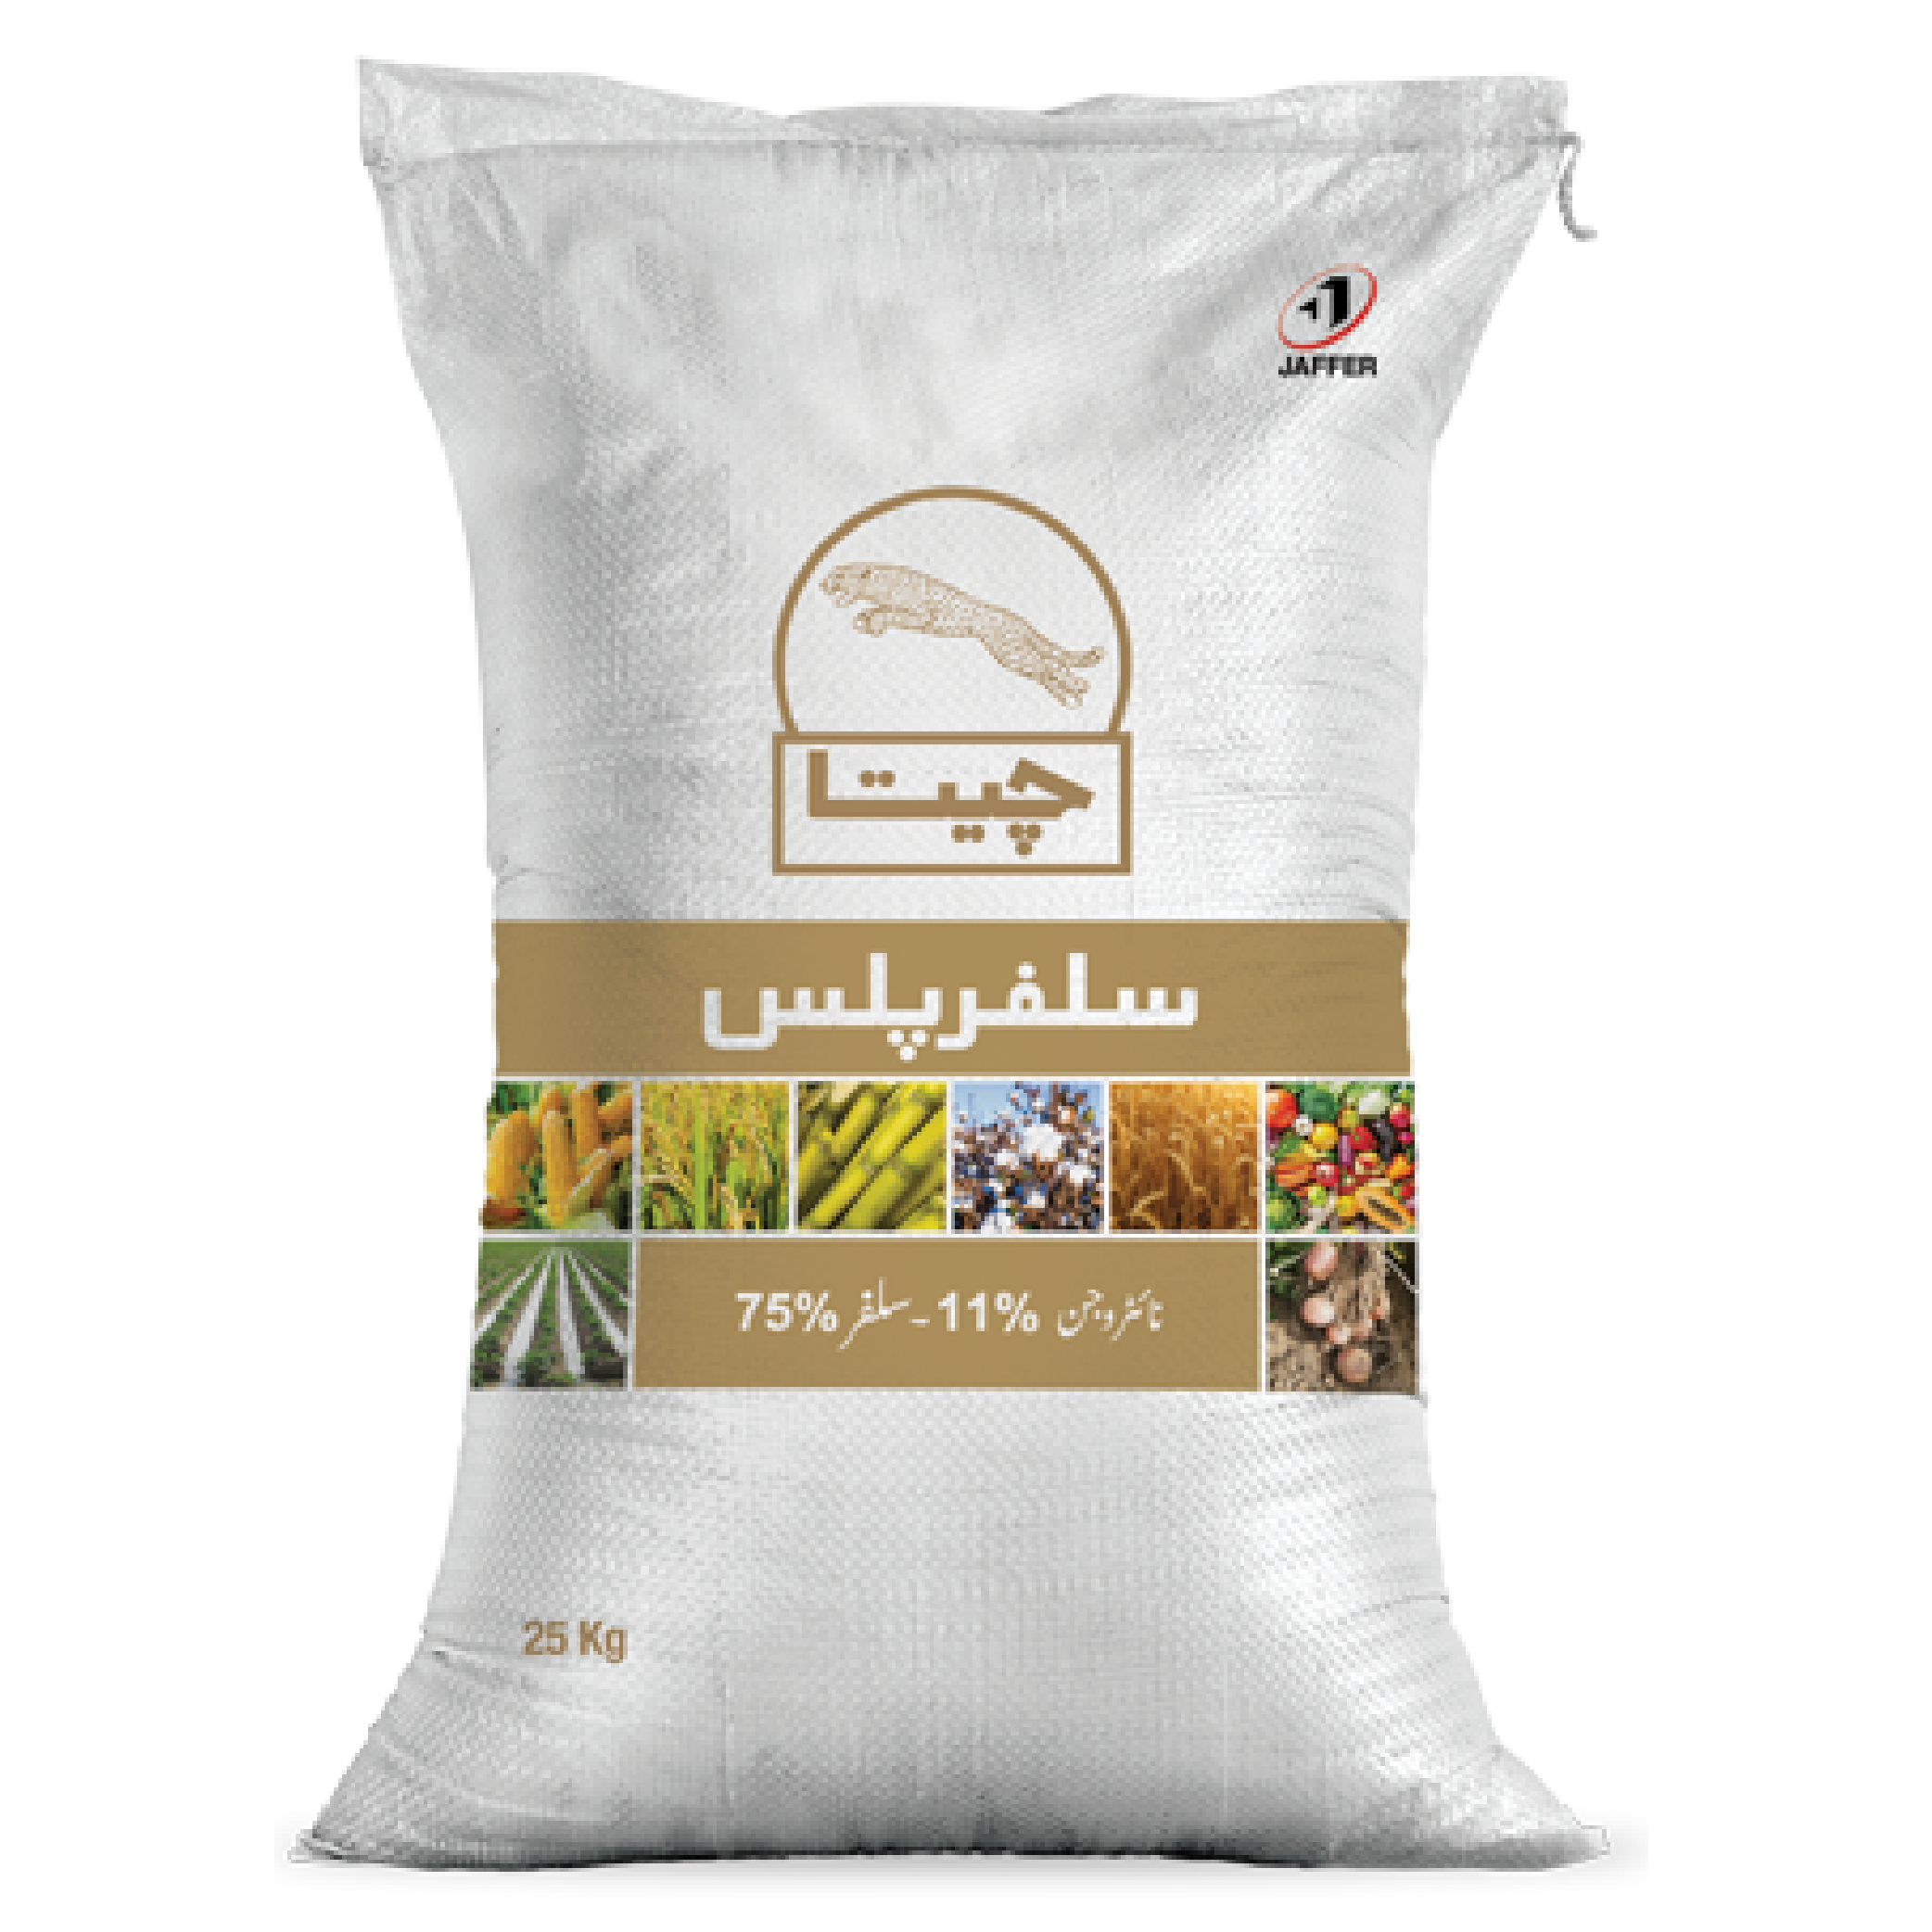 2nd Cheeta Sulphur Plus 10 Kg Fertilizer Jaffer Agro Services